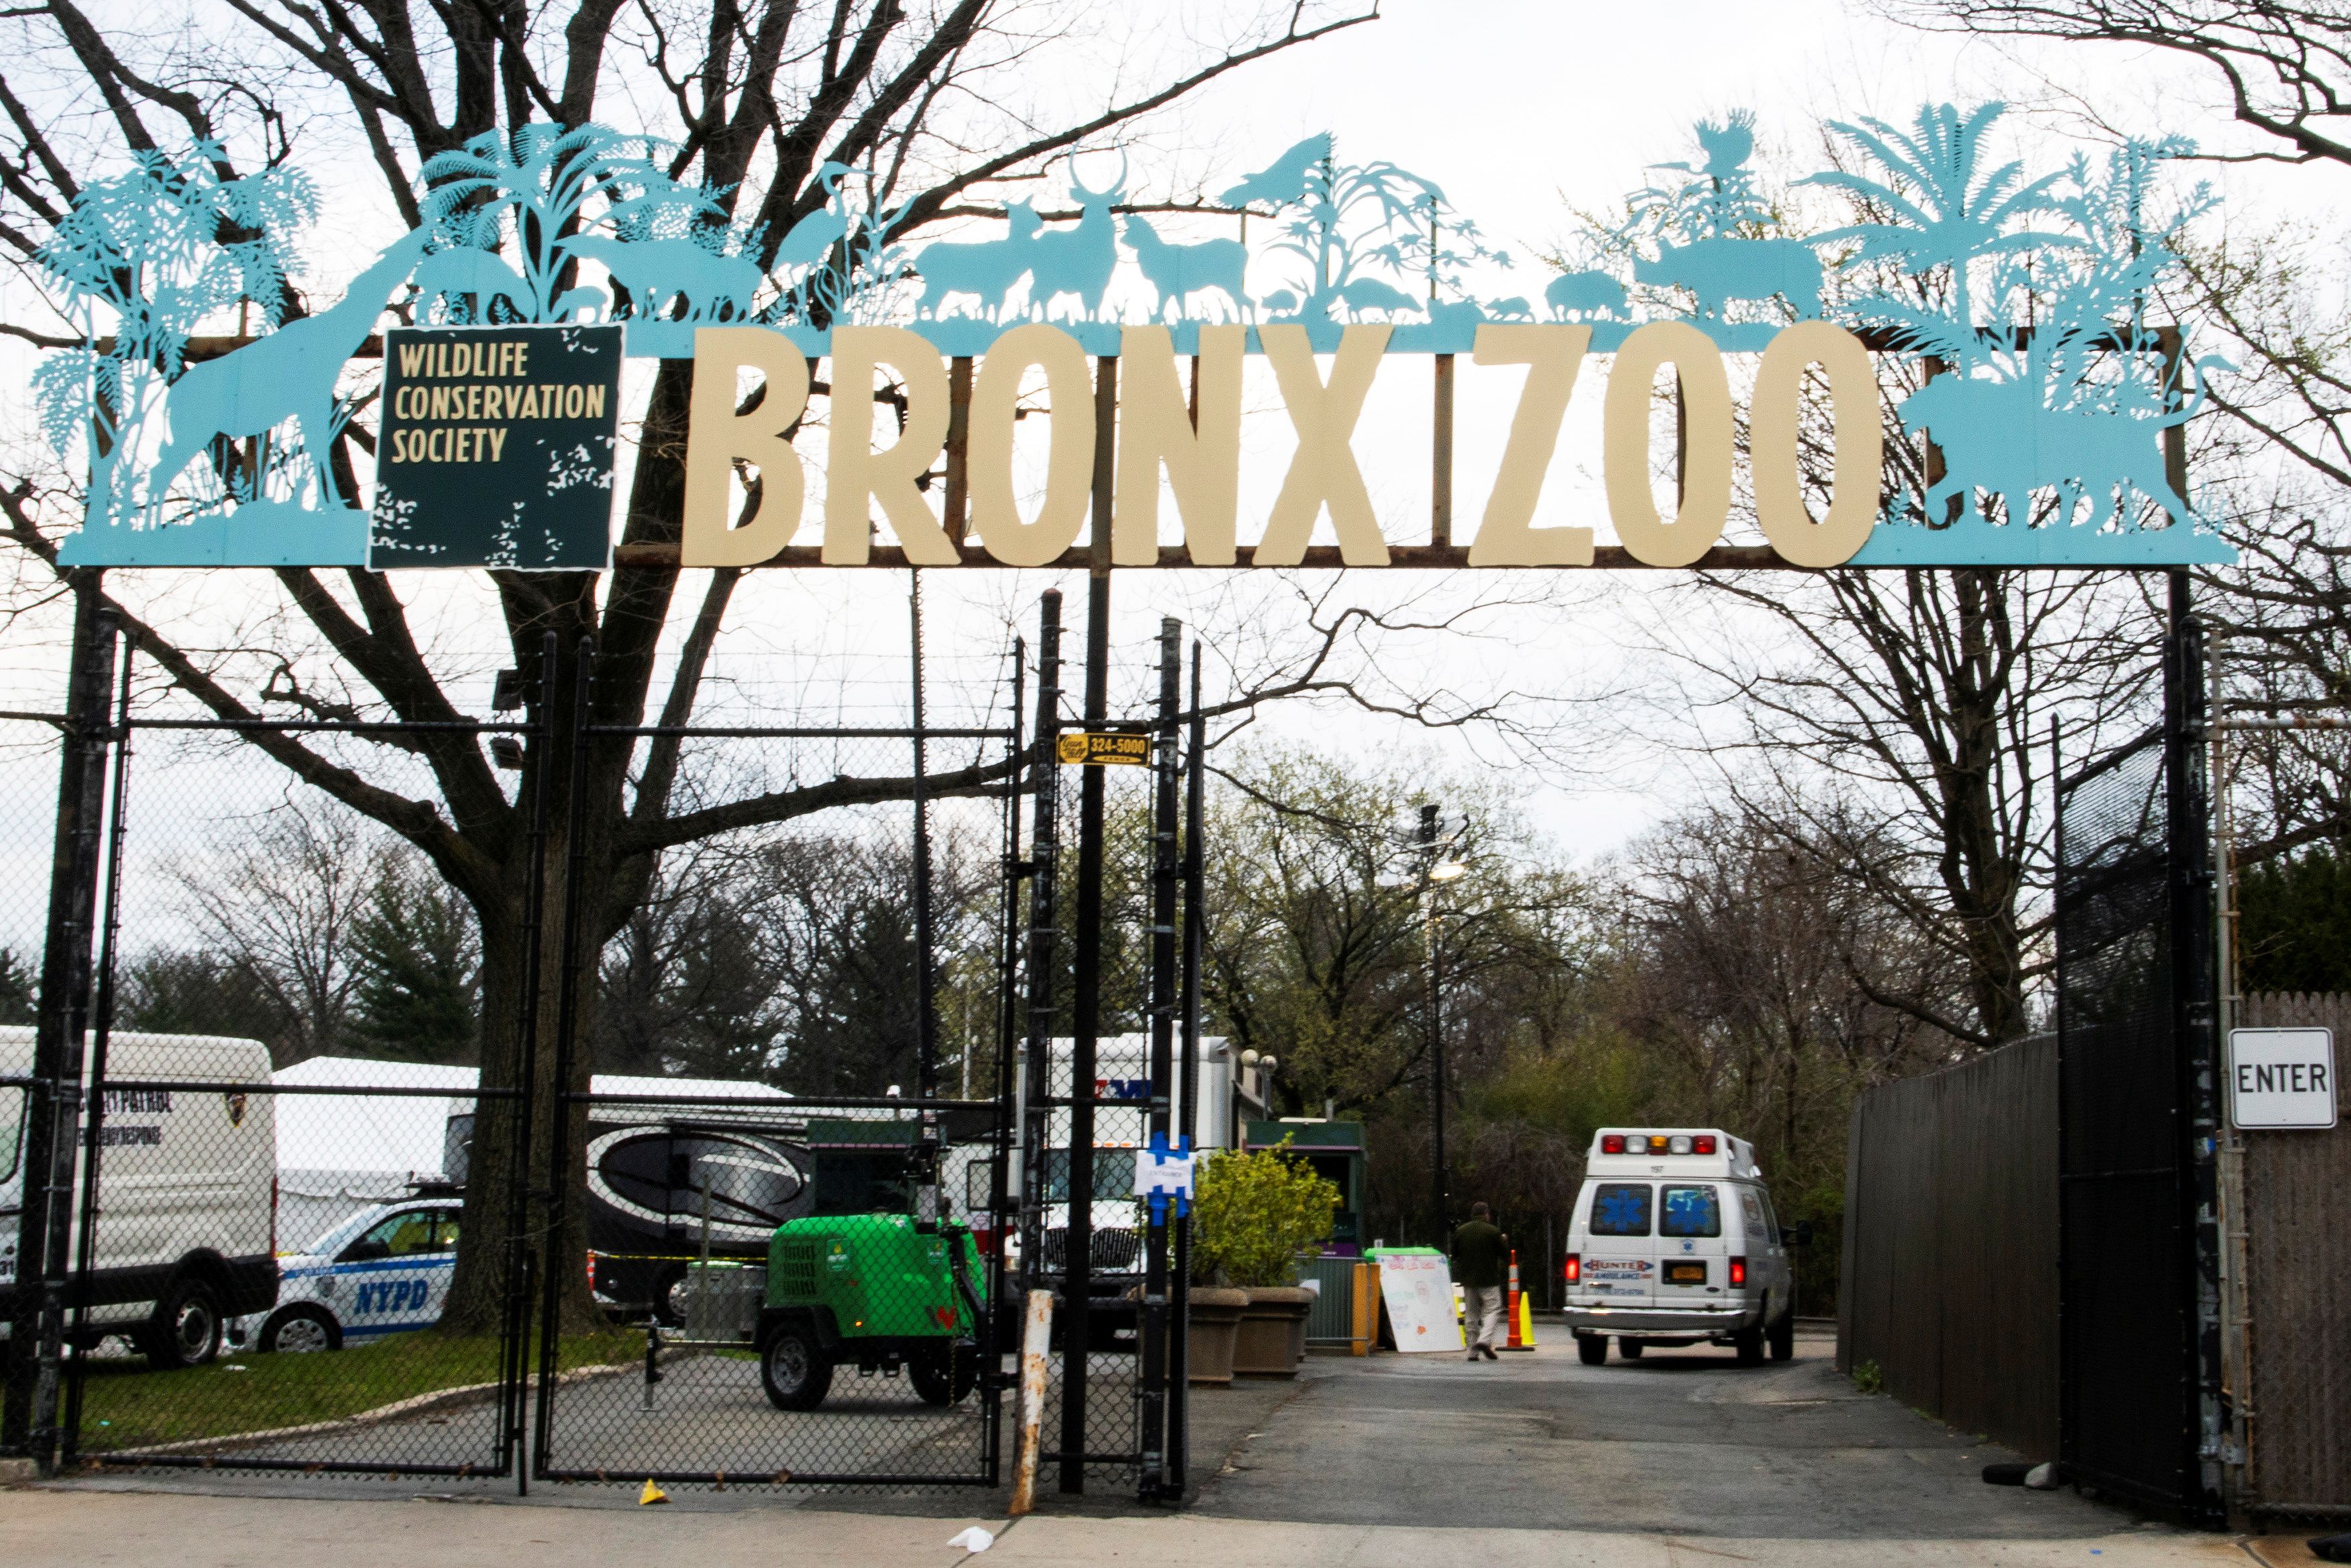 En el Bronx Zoo habrá un show de luces navideñas (Reuters)